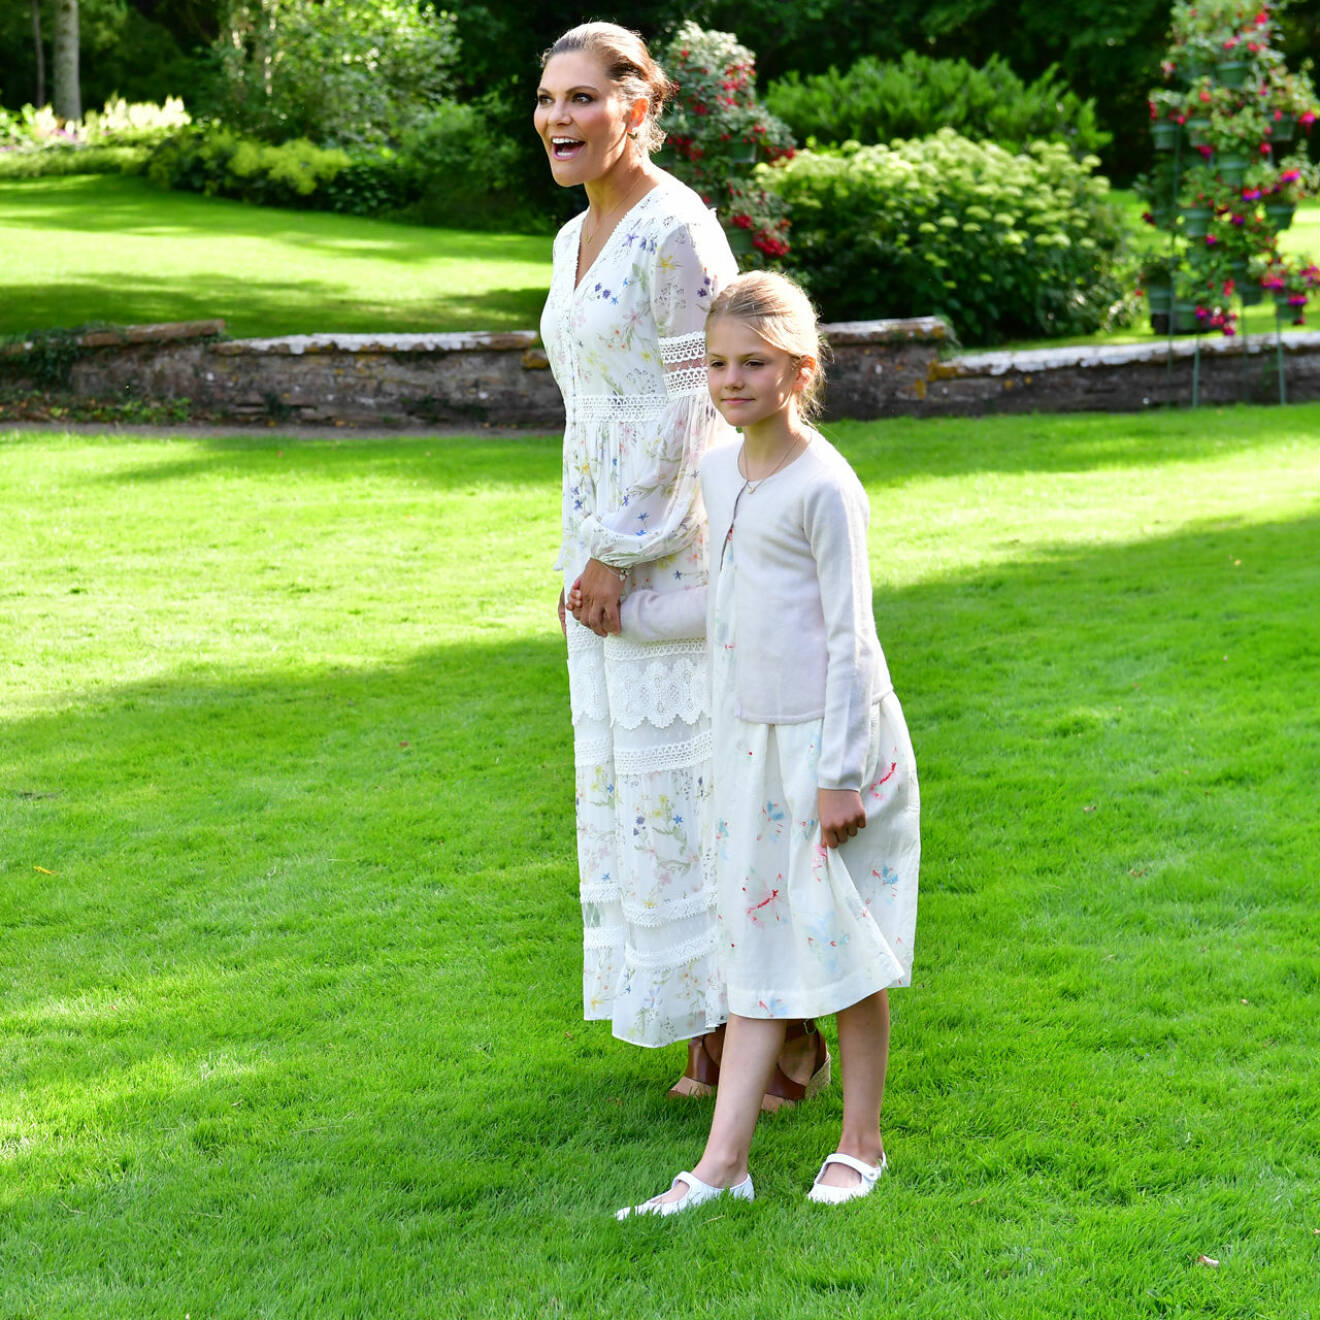 Victoriadagen 2020: Kronprinsessan Victoria och prinsessan Estelle.